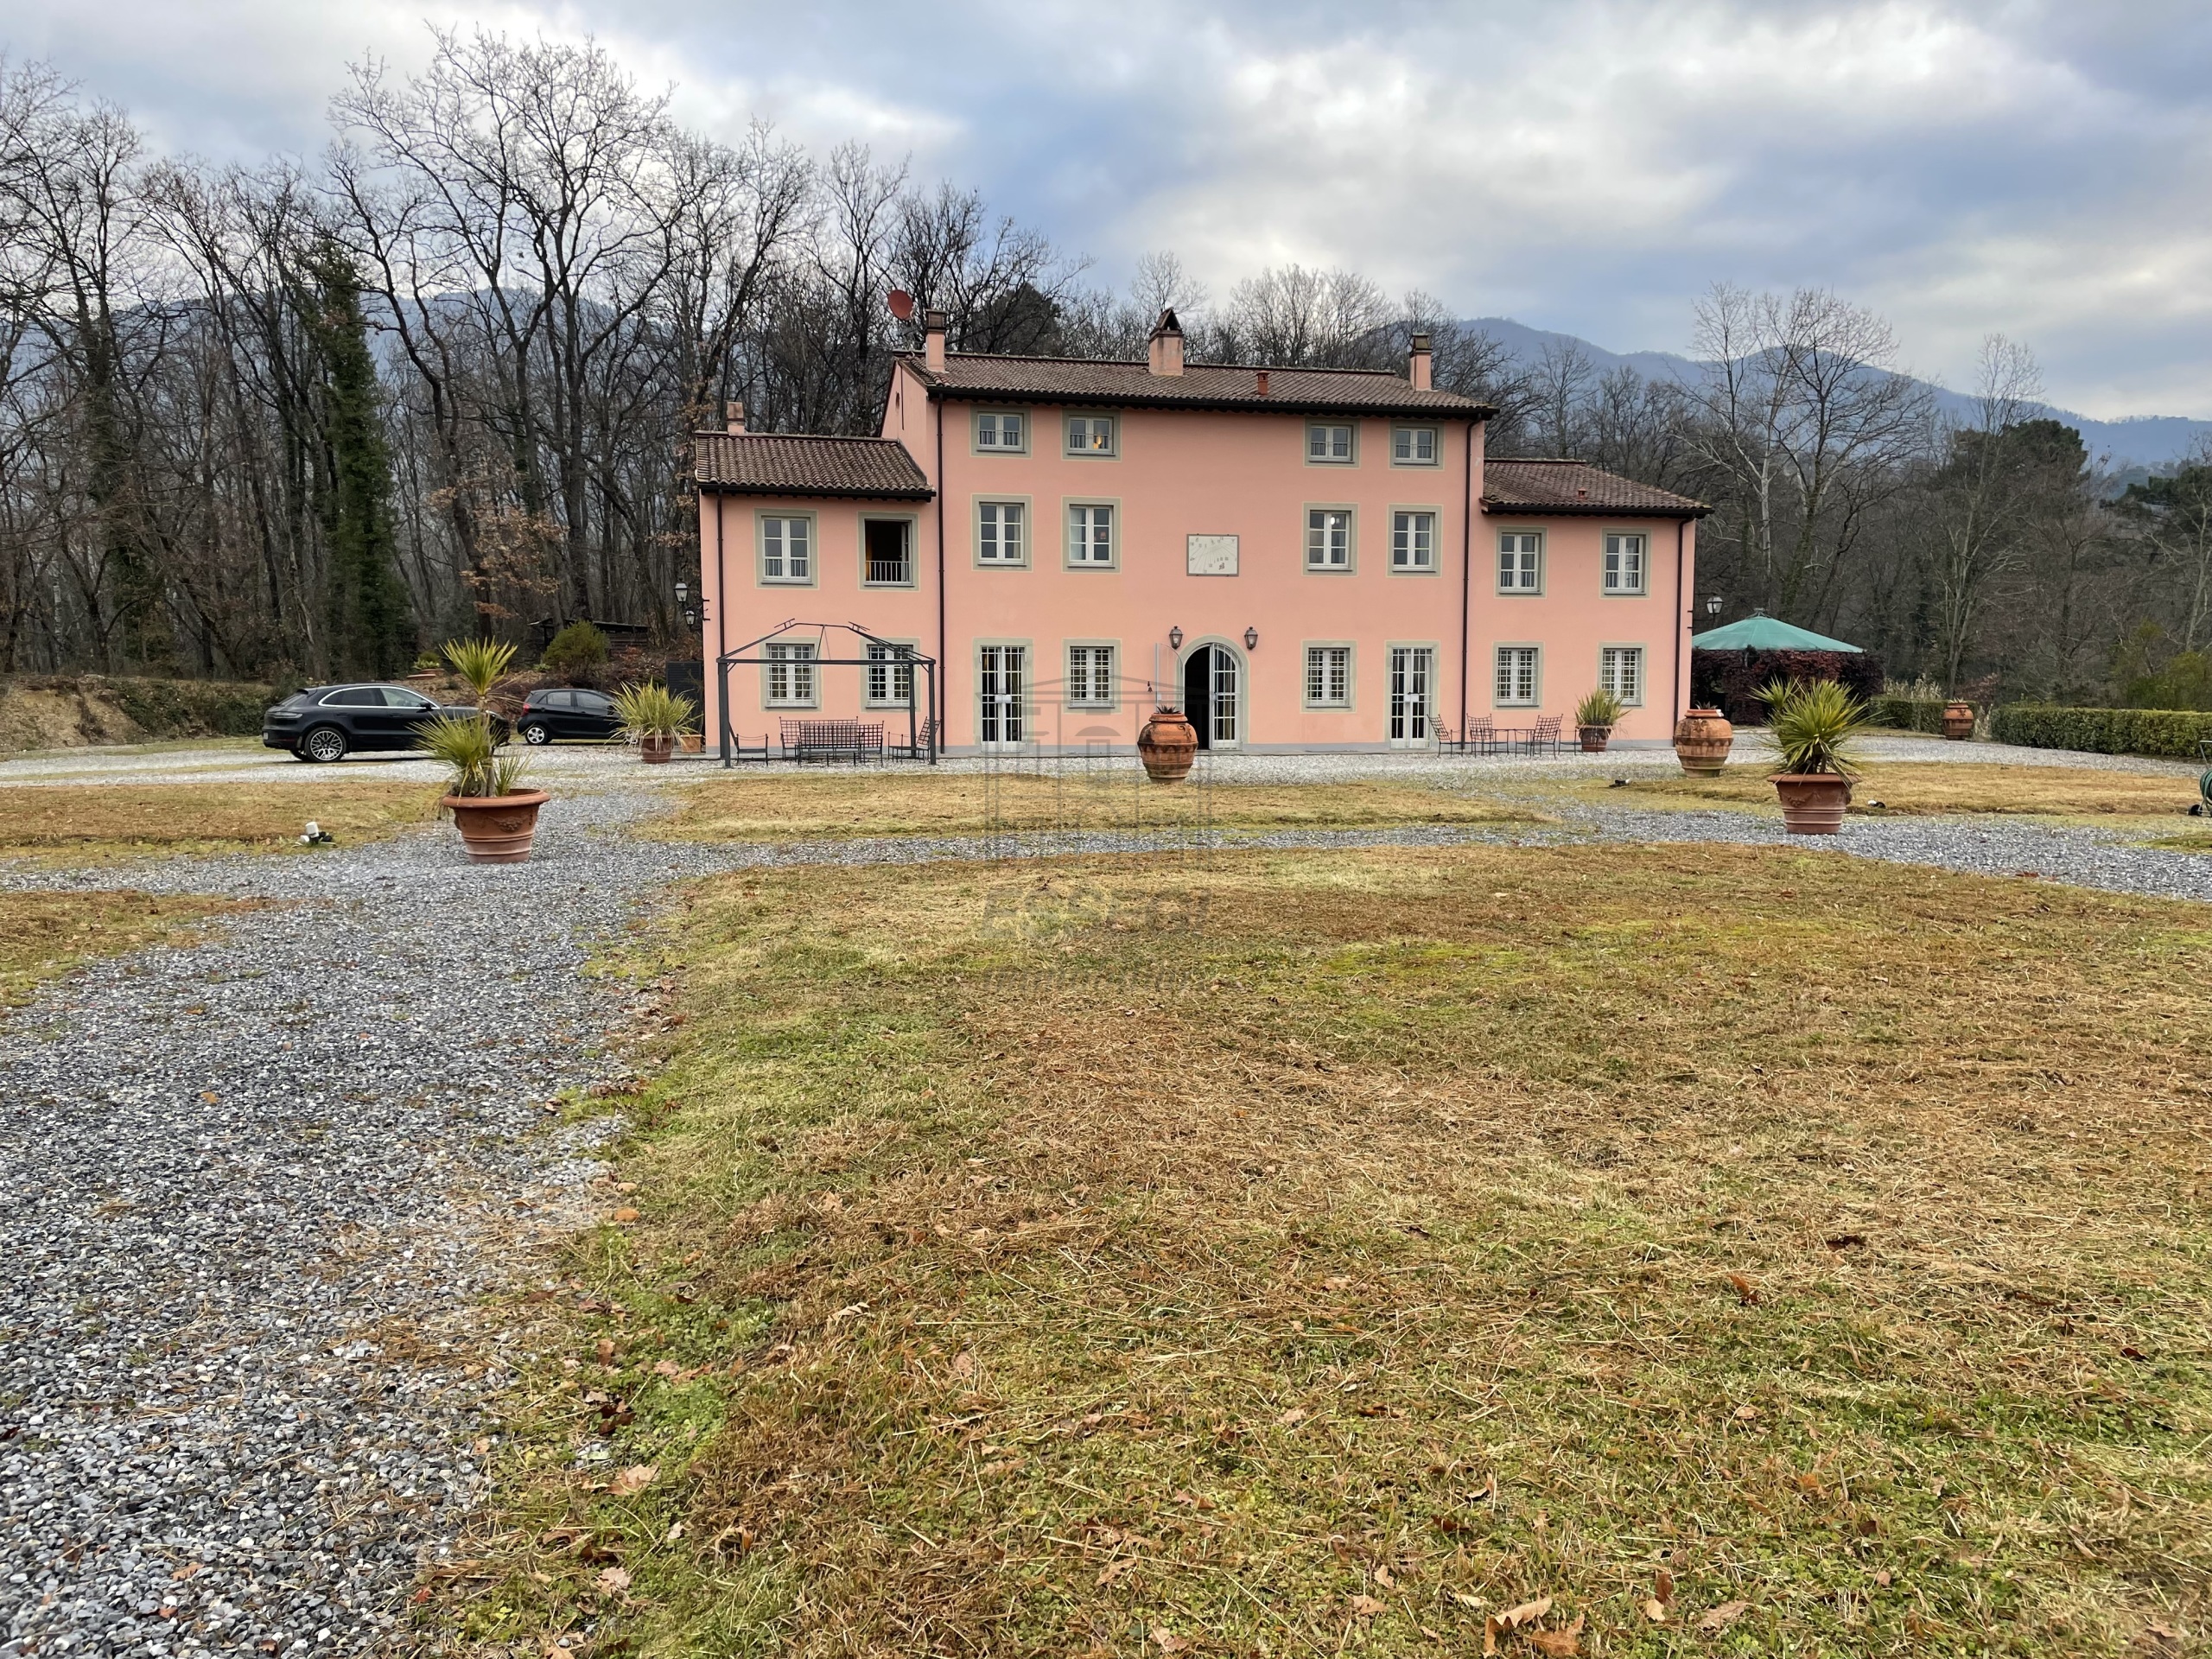 Villa nuova in via per palmata 1320, Lucca